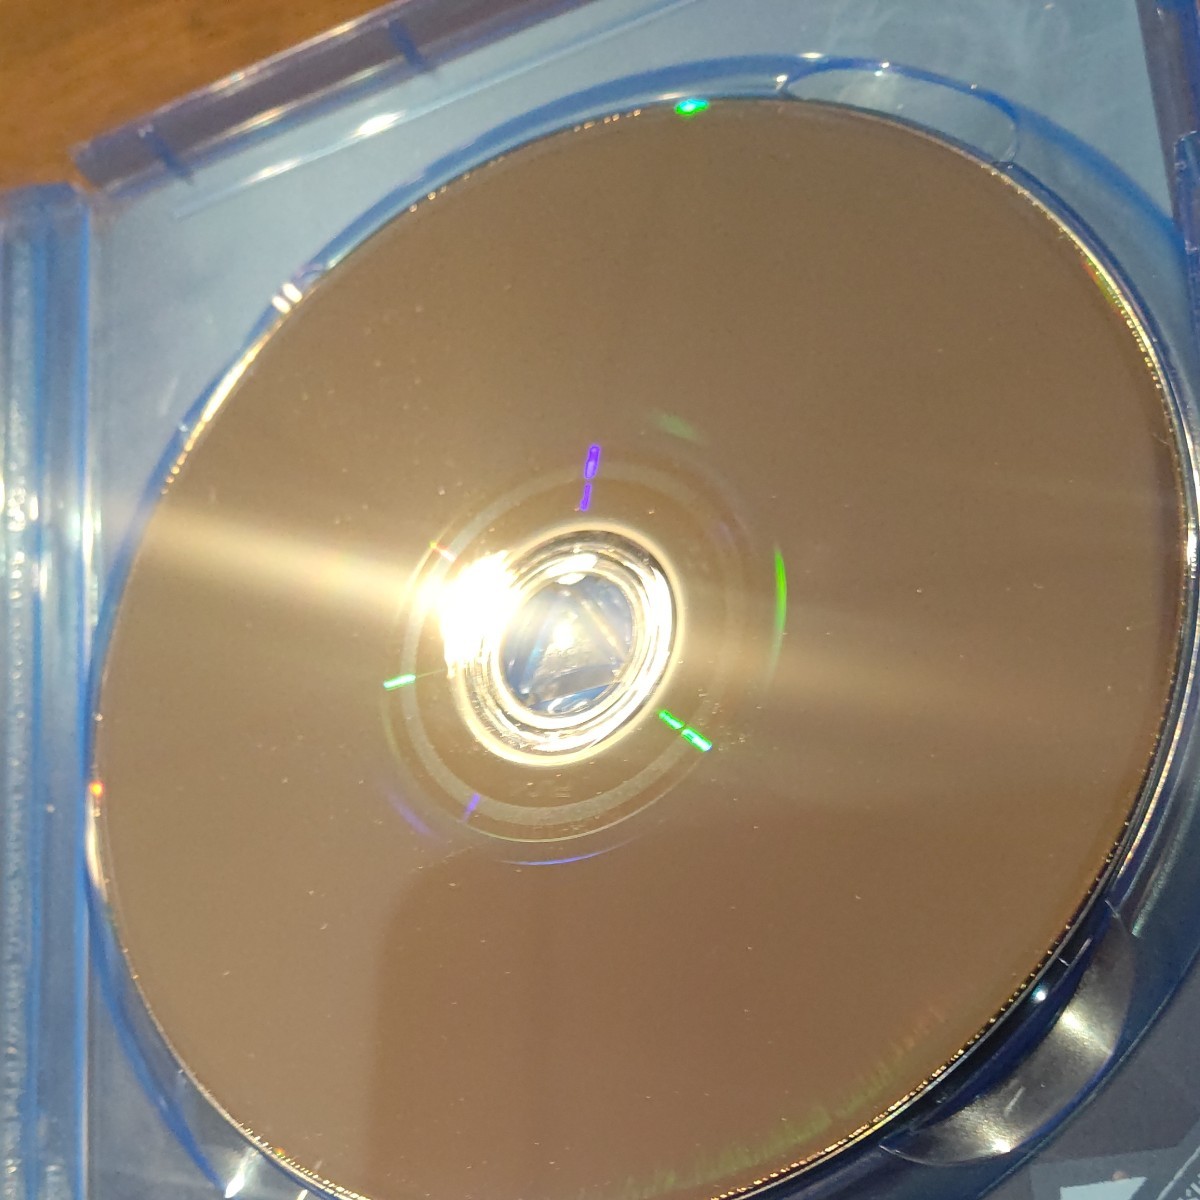 ジャッジアイズ 死神の遺言 ピエール瀧 バージョン PS4ソフト